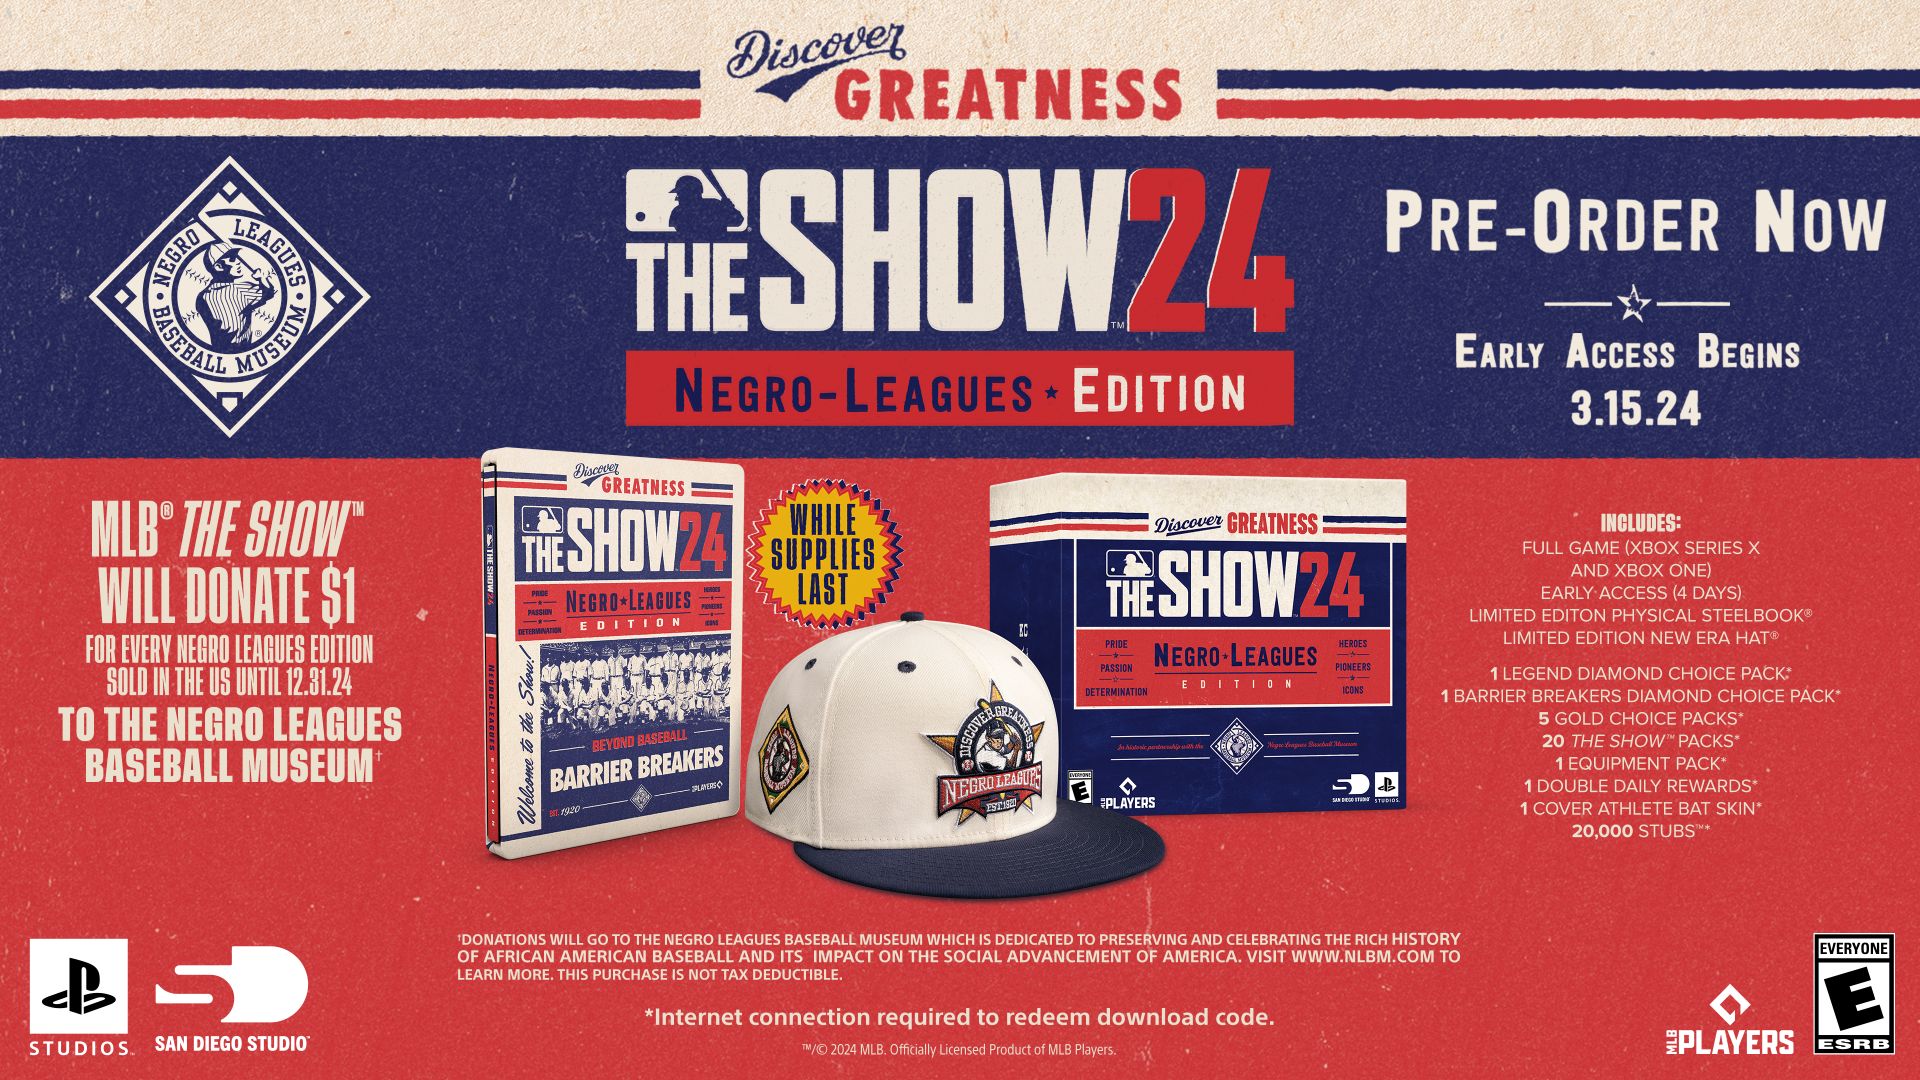 Imagem da edição da MLB The Show 24 Negro Leagues